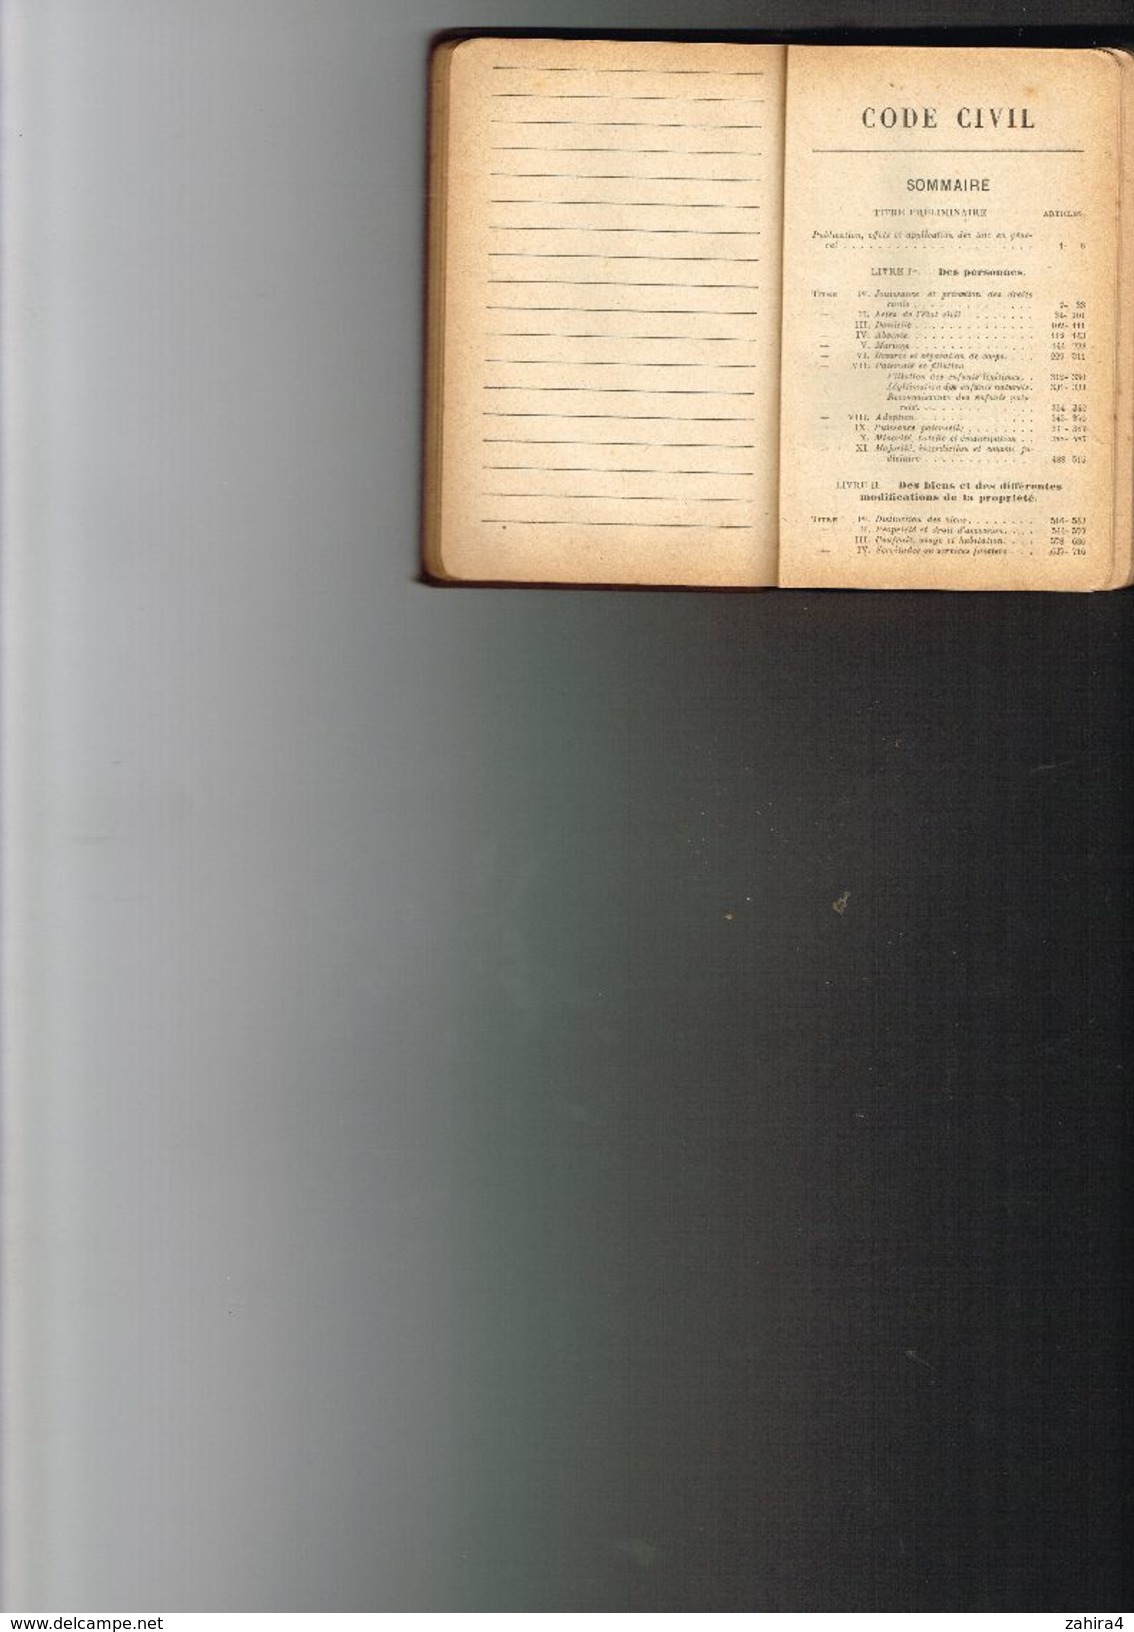 Agenda-Code 1928 Avec Formules & Renseignements Pratique Paris à L'administration Du Recueil Général Des Lois Et Décrets - Droit